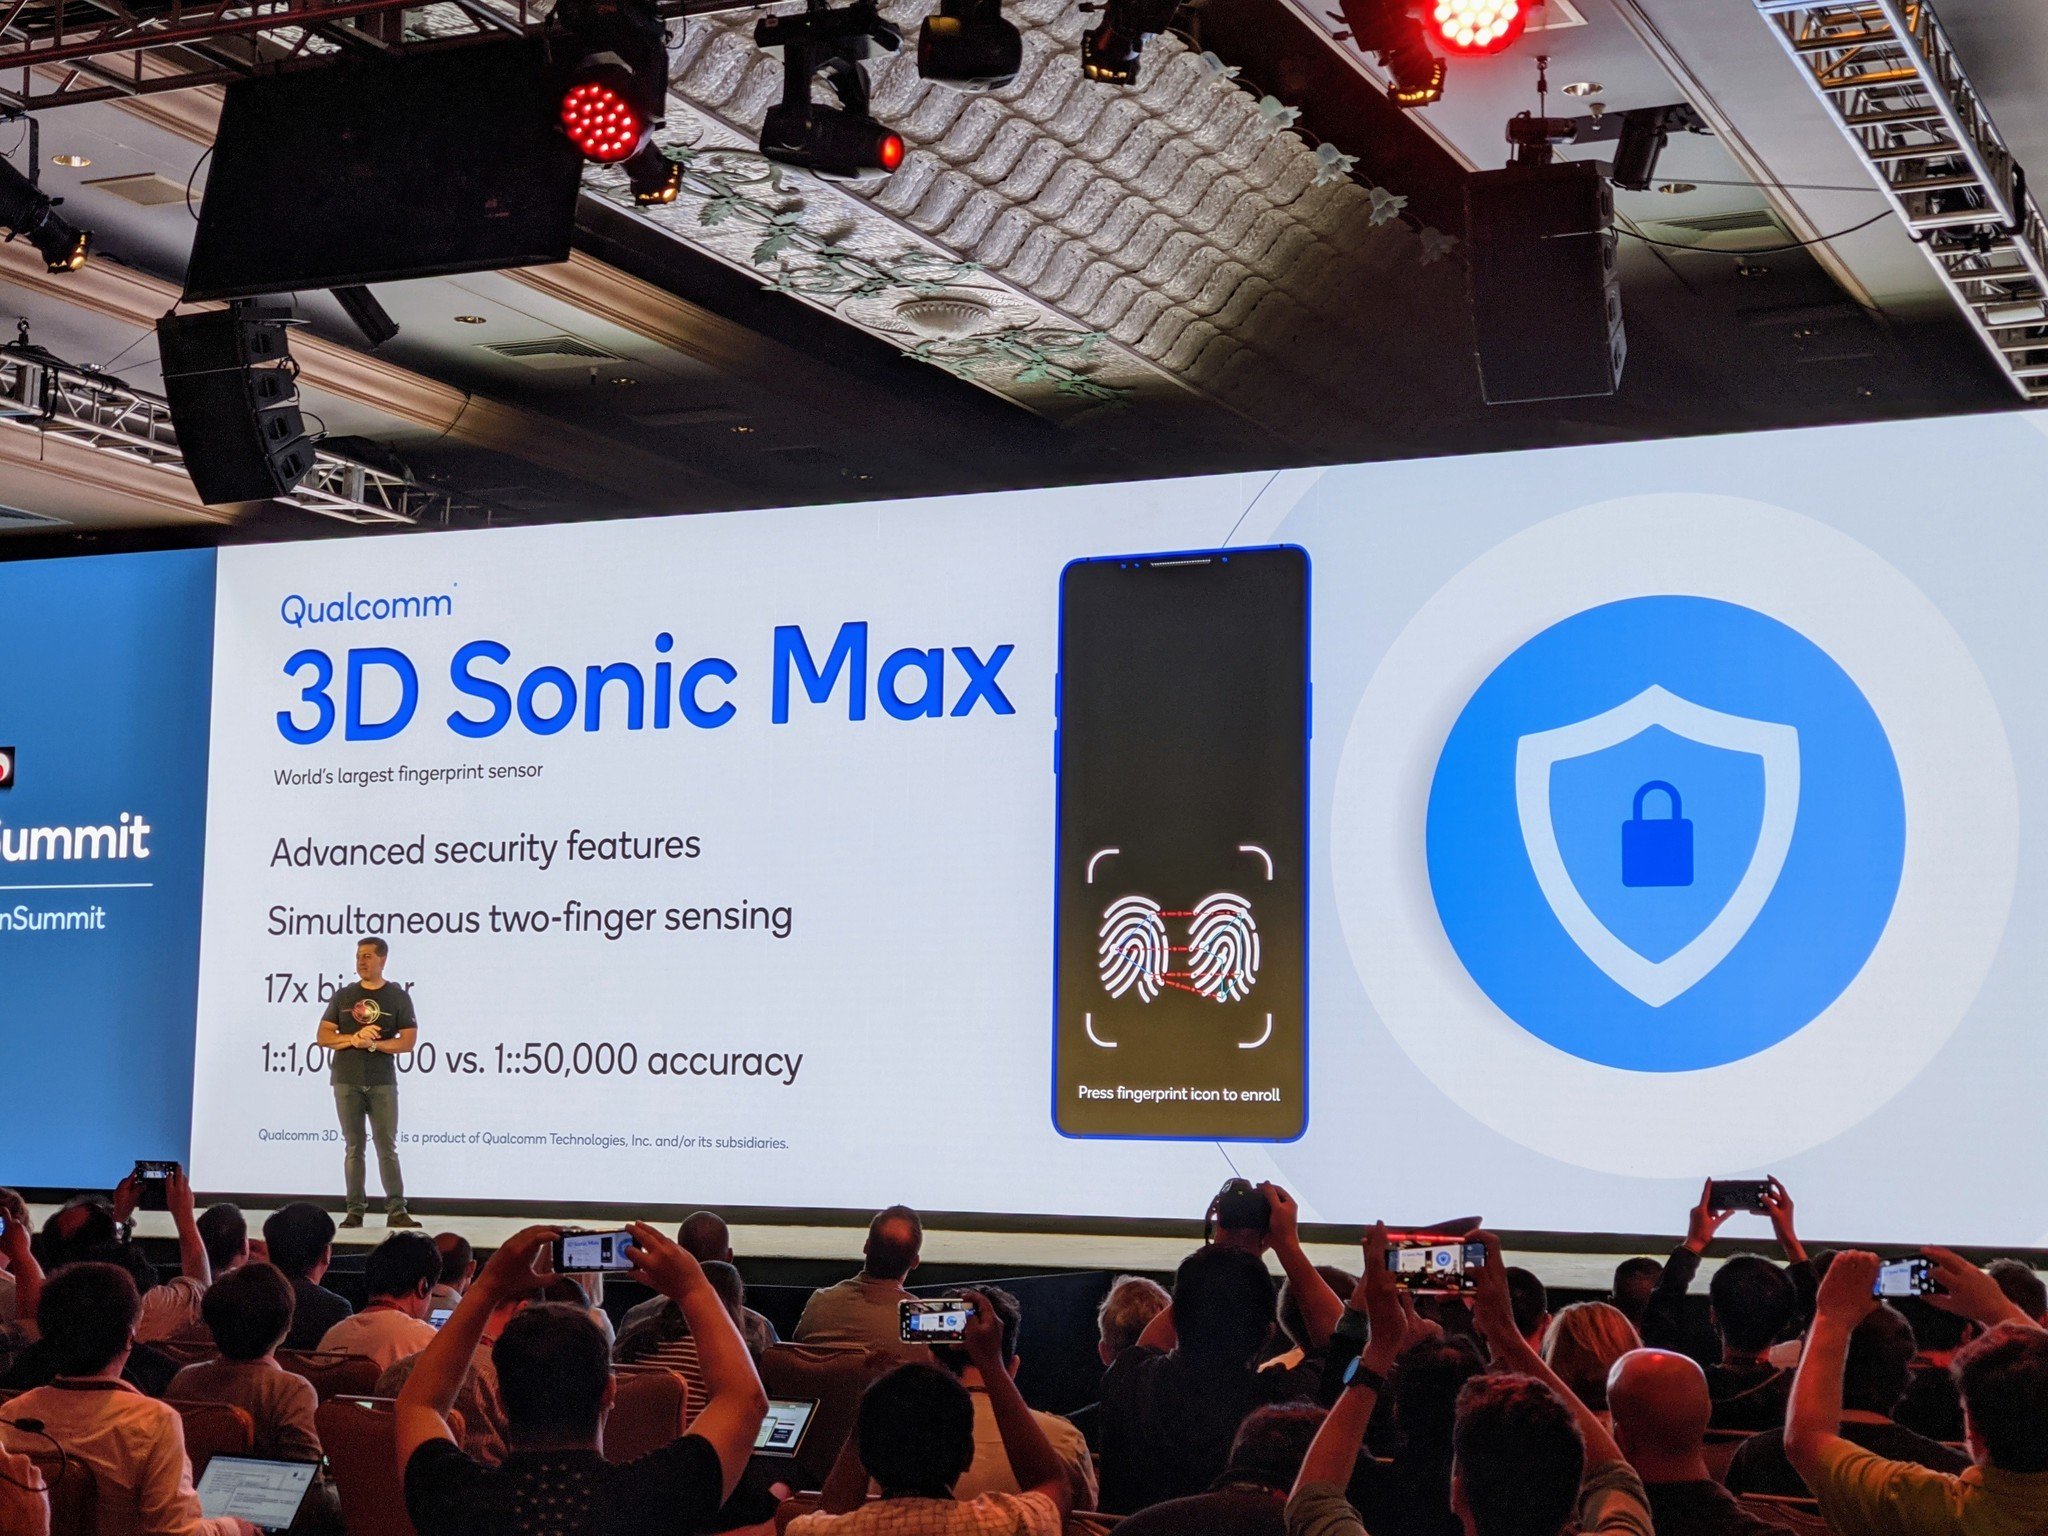 Qualcomm 3D Sonic Max fingerprint sensor